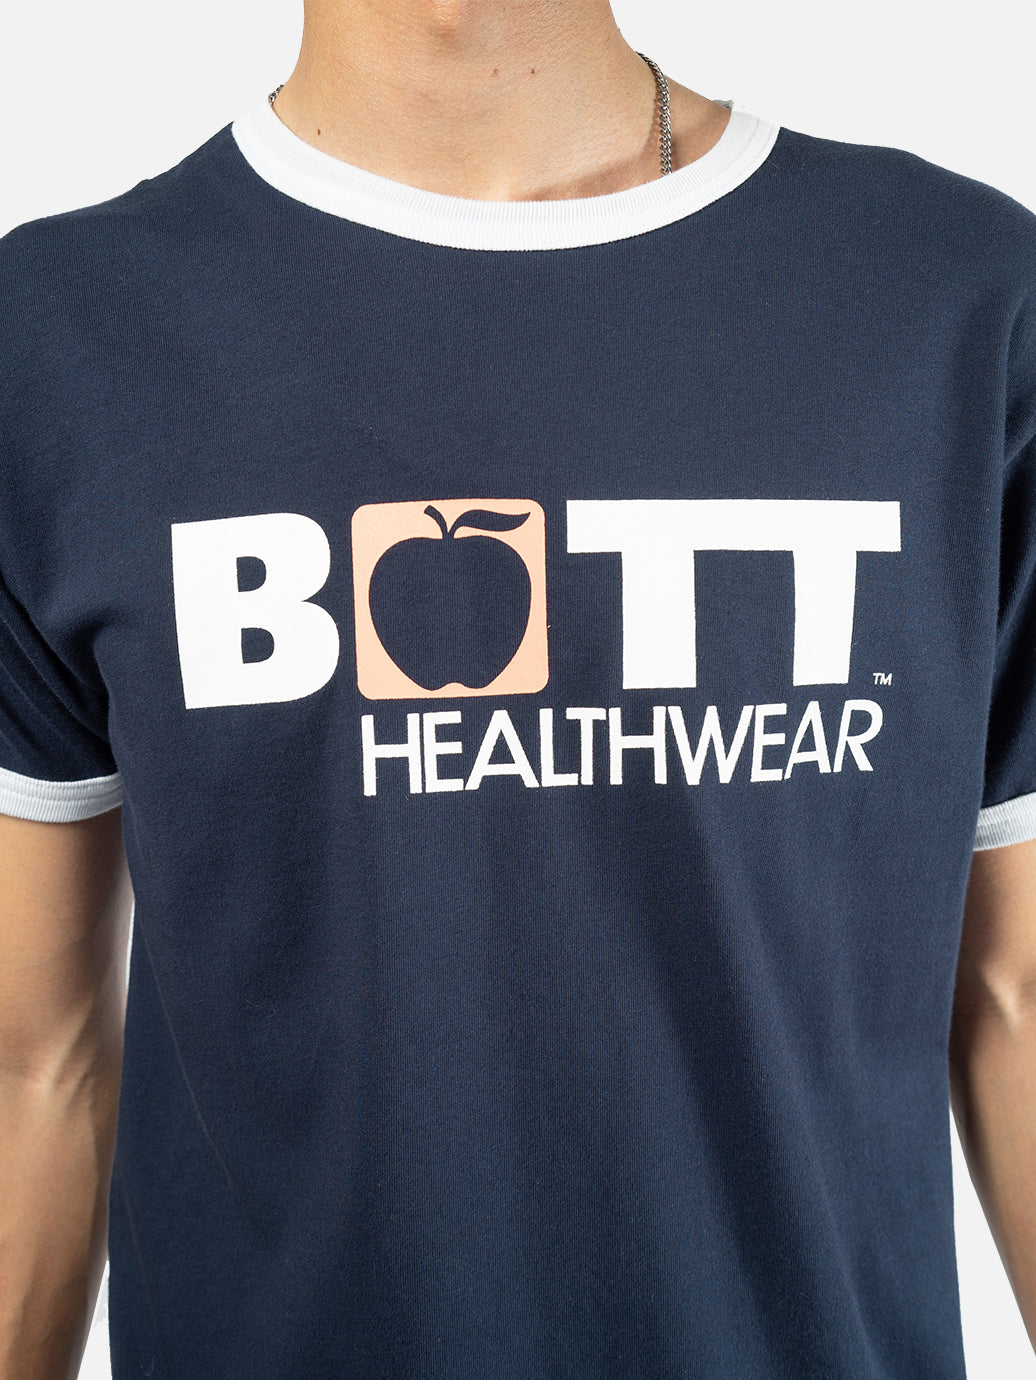 激安単価で Bott Health リンガーT bott Ringer Tシャツ/カットソー